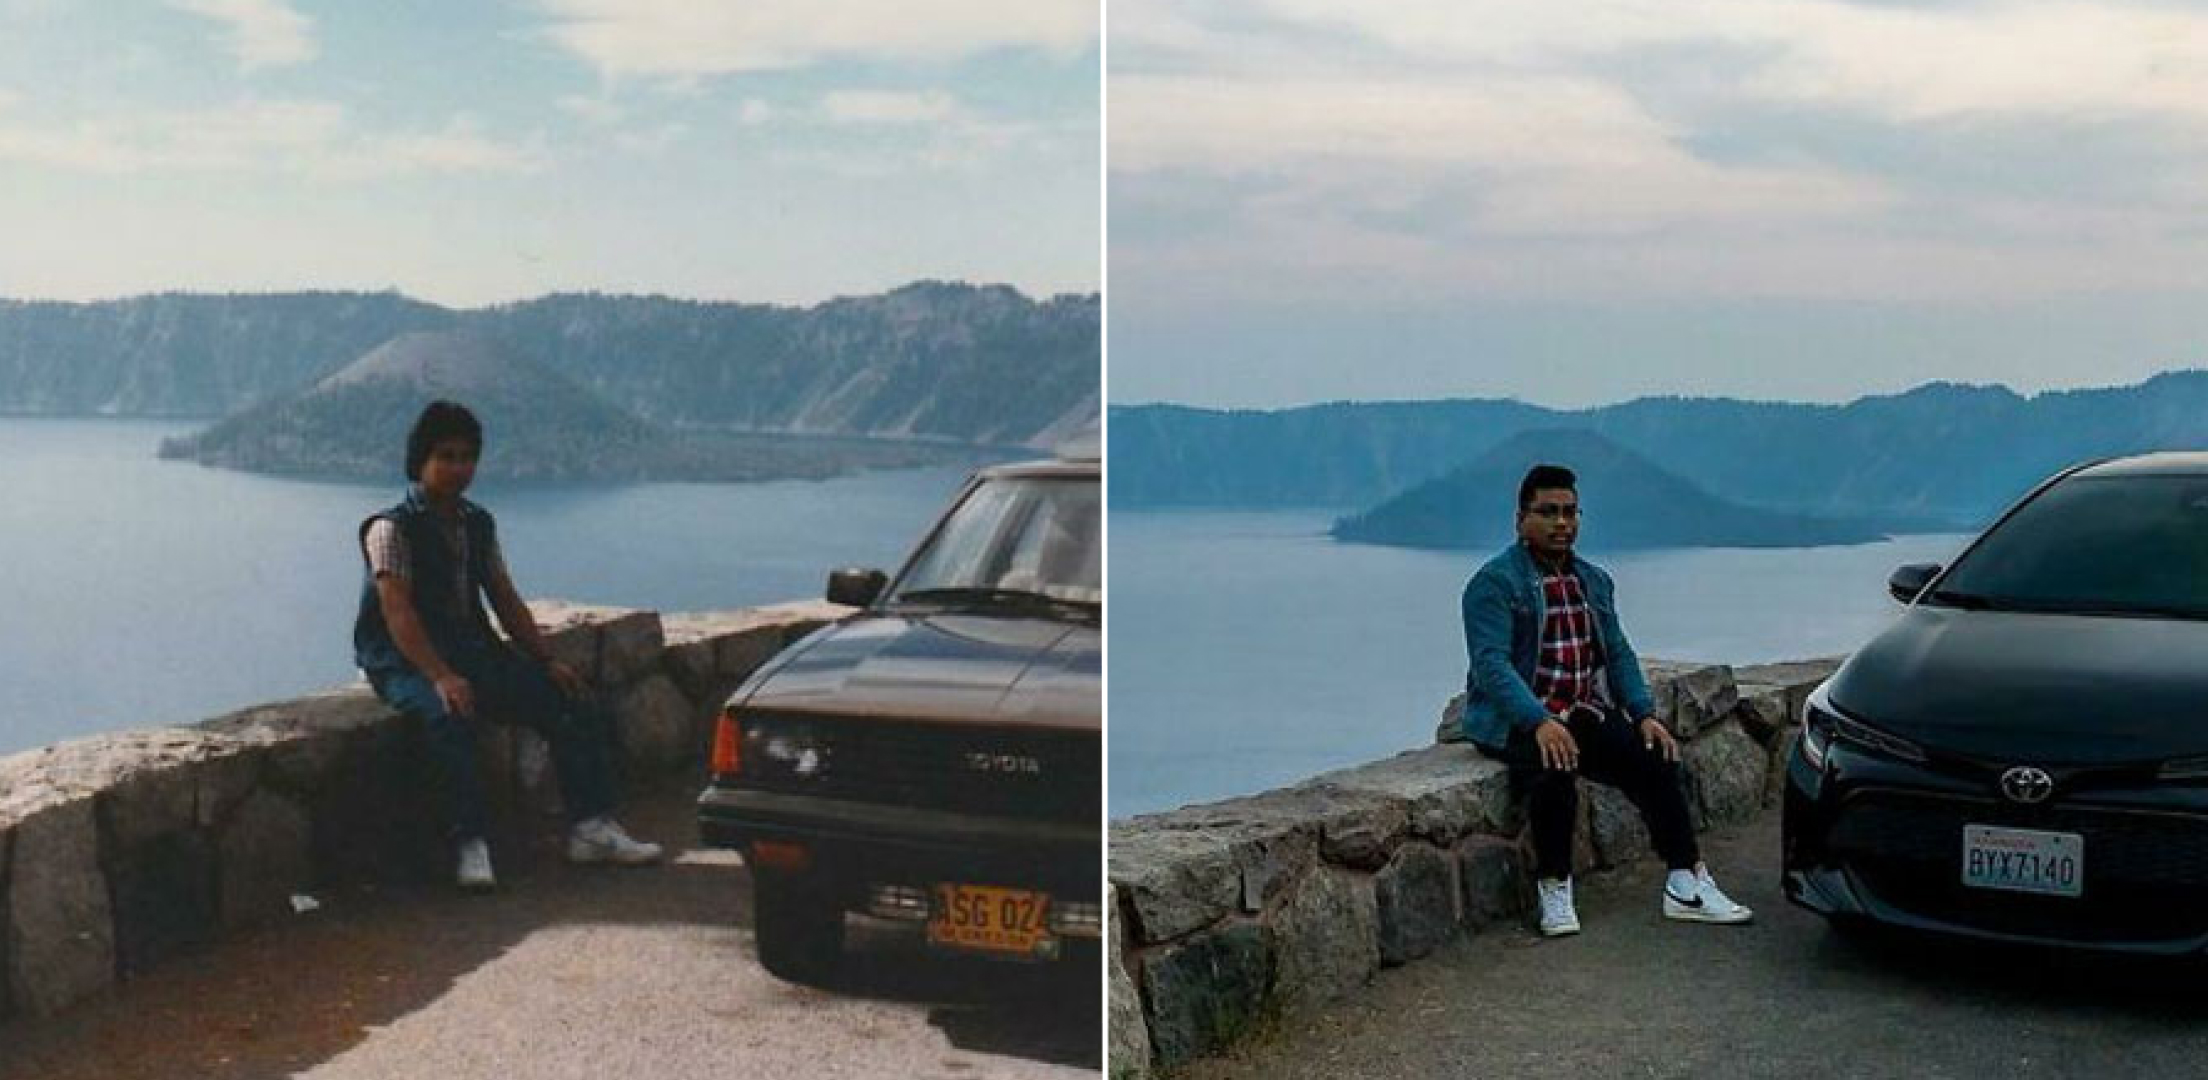 10 мест, которые сфотографировали с разницей в десятилетия, и такие метаморфозы не могут не удивить